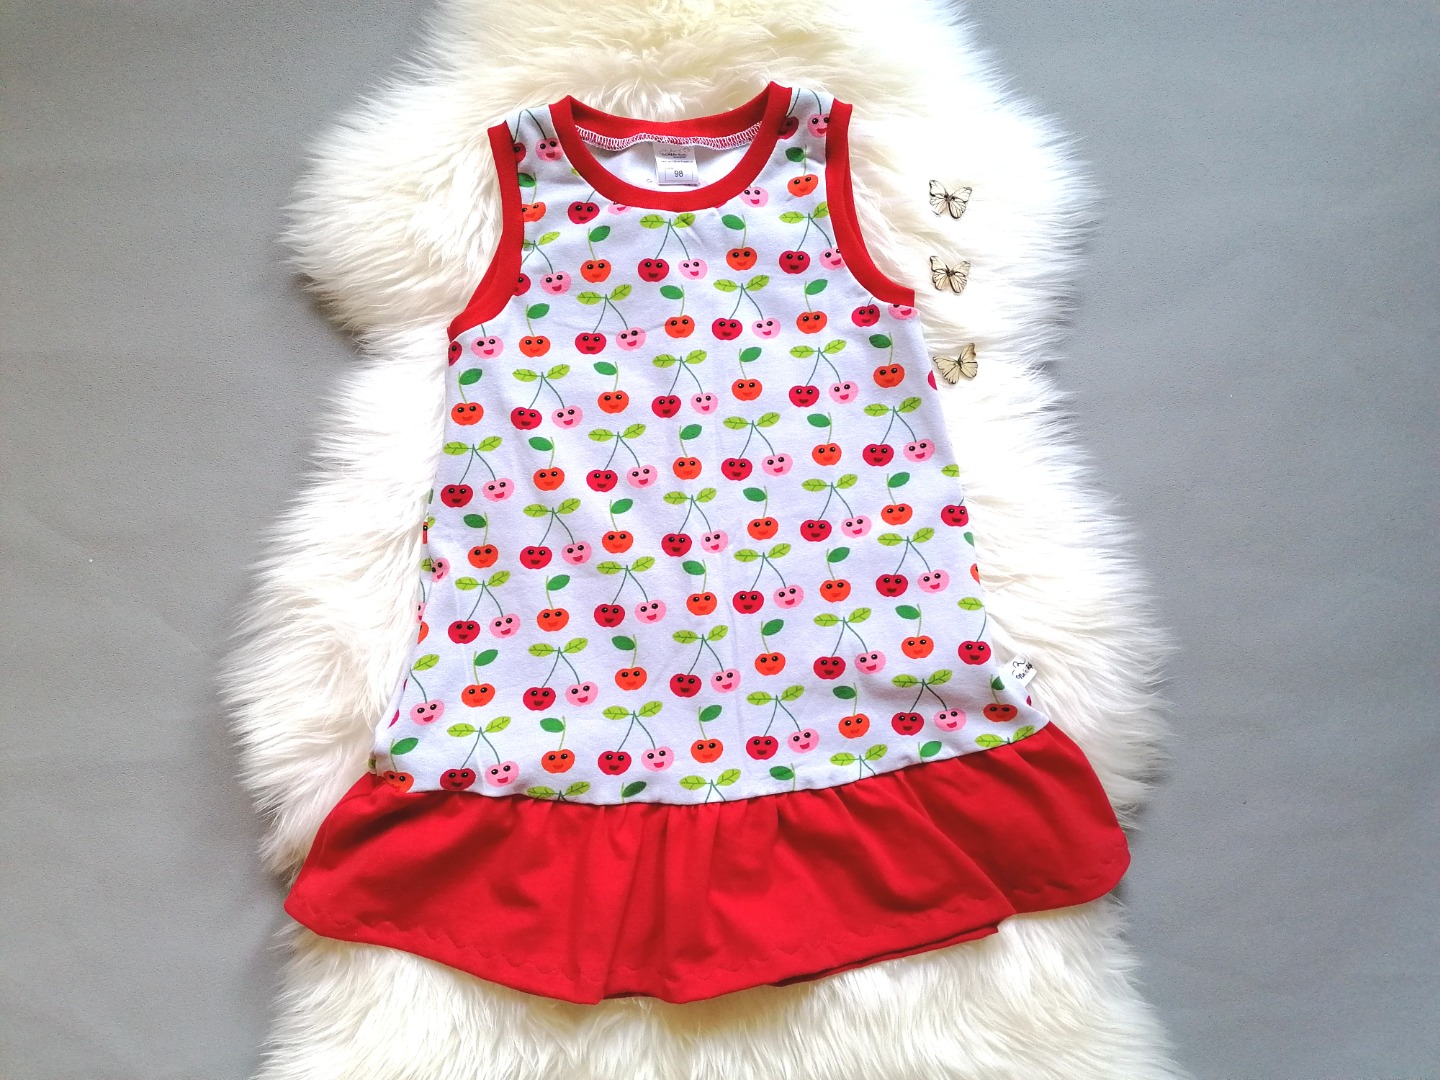 Baby Kind Trägerkleid mit Rüsche Kirschen grau rot in Wunschgröße 56 bis 98